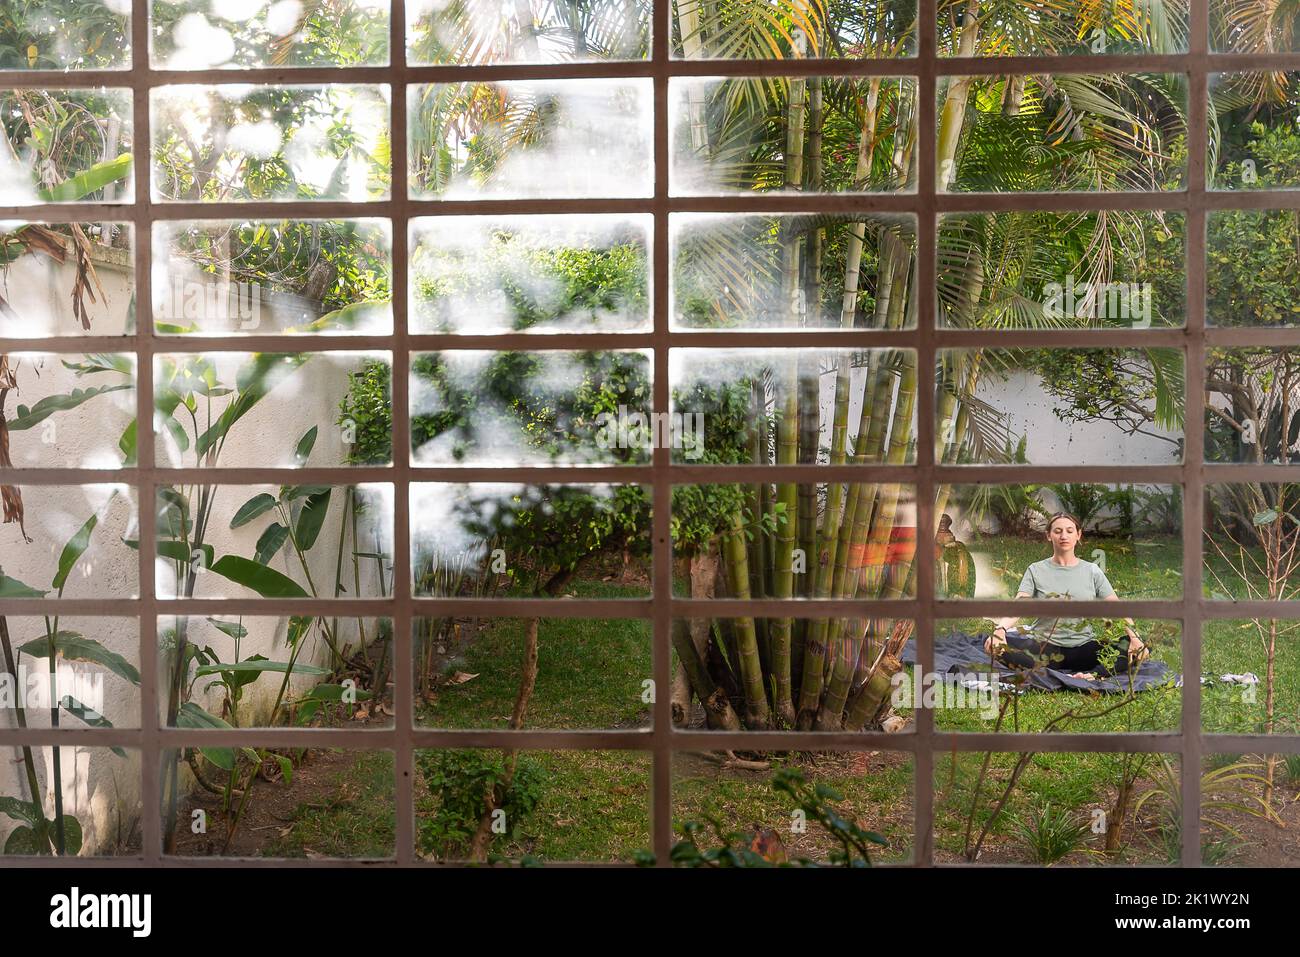 Donna pratica yoga nel cortile circondato da piante e alberi, catturati attraverso la finestra della casa con vibrazioni tropicali e palme Foto Stock